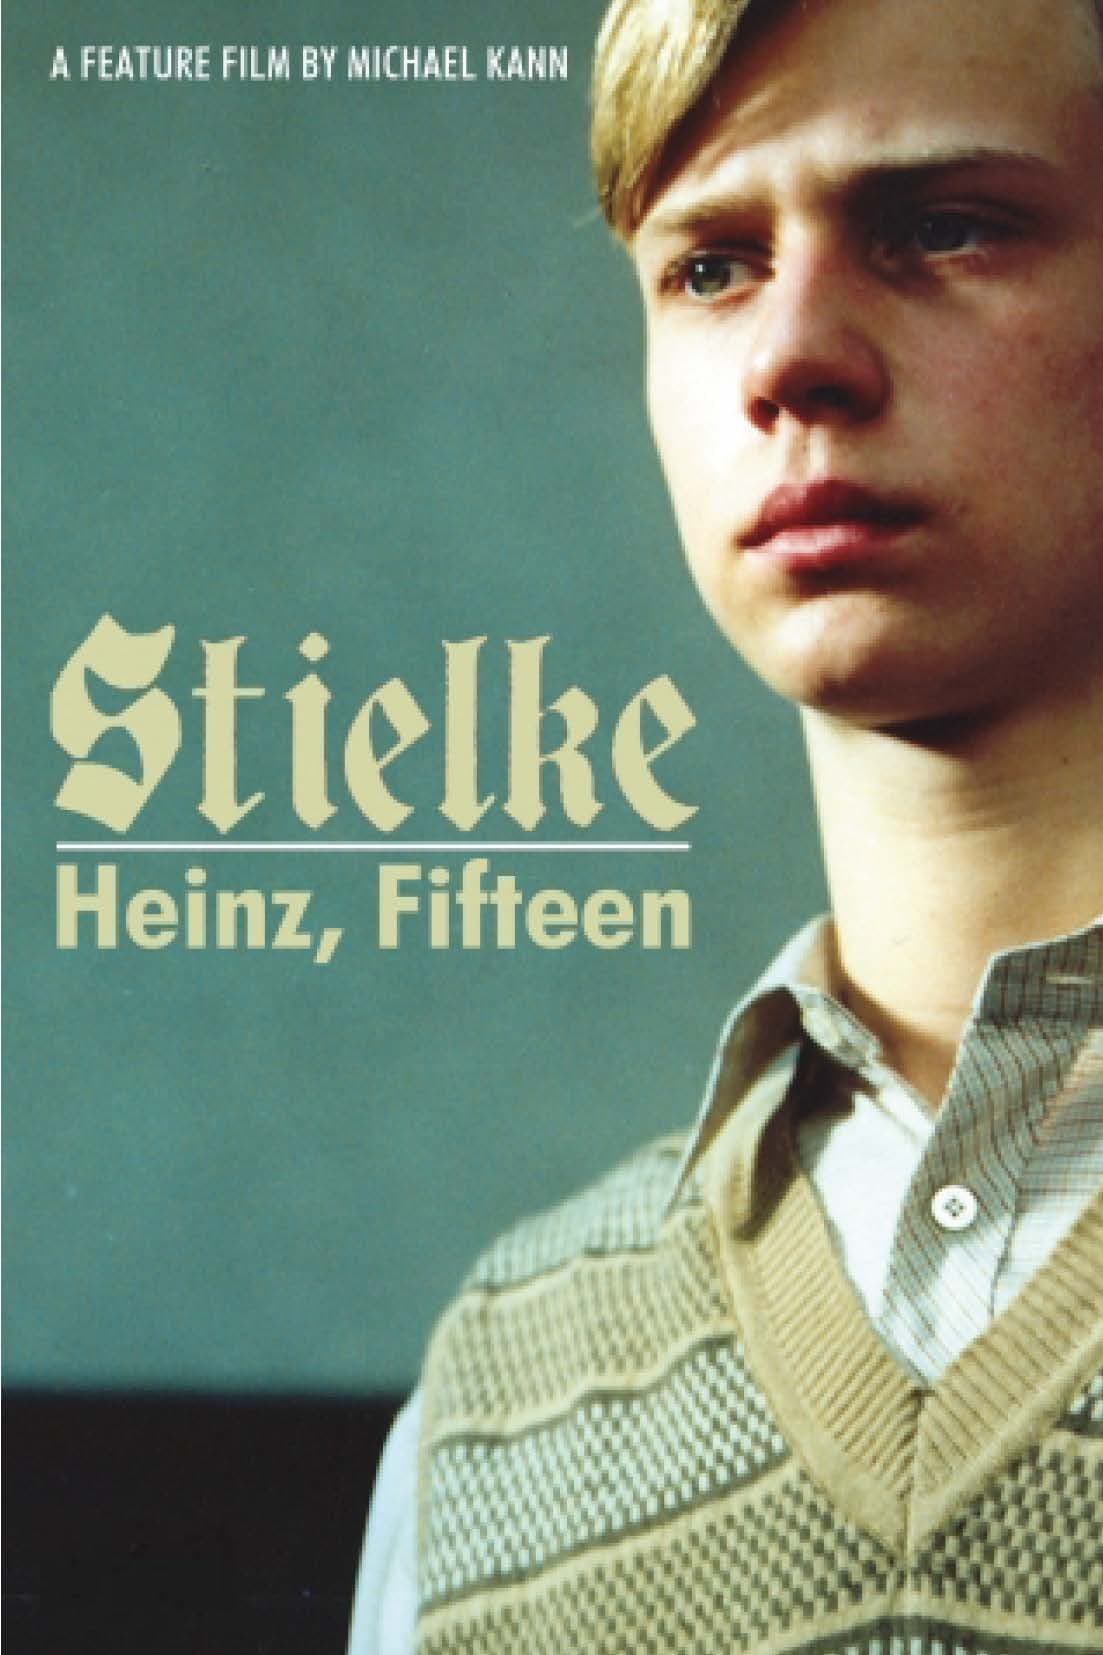 Stielke, Heinz, Fifteen...